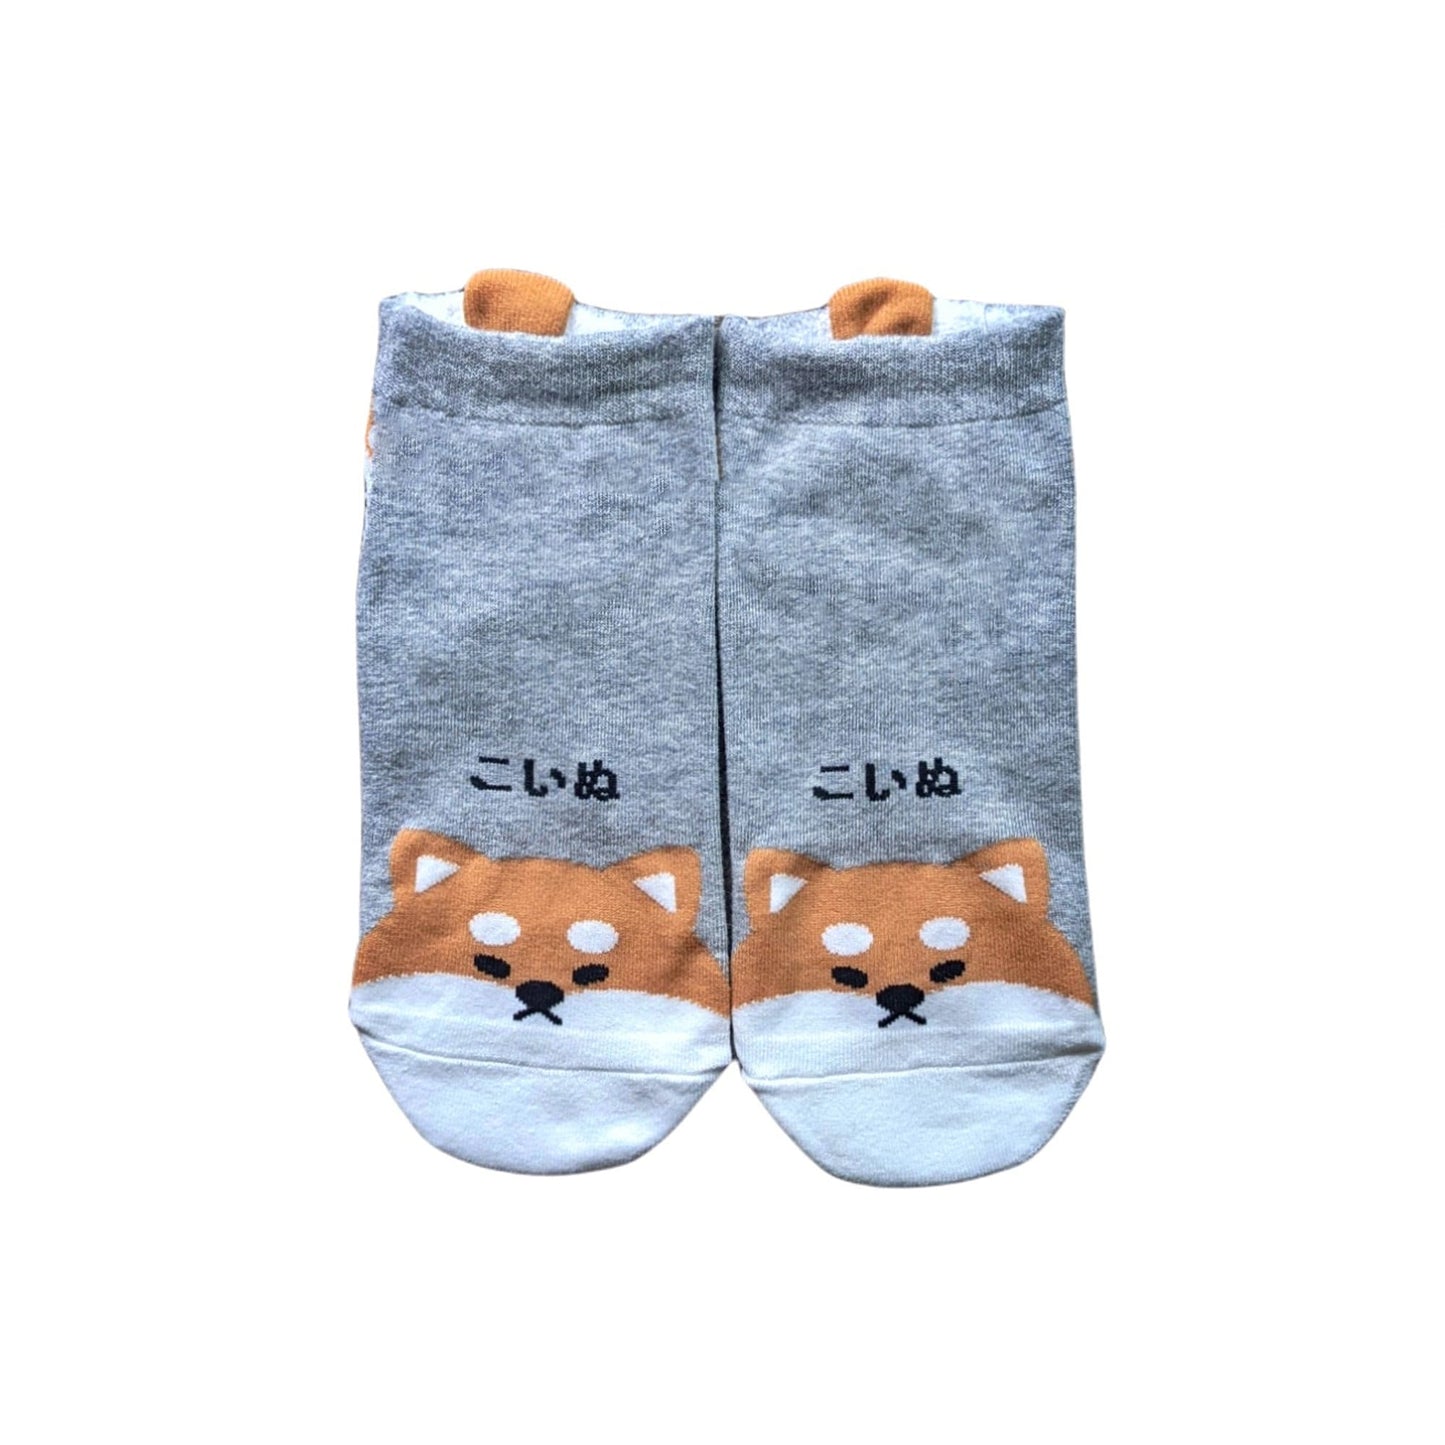 Japanese Words Pet Friends Women socks | Pink Socks | Dog Socks | Womens Socks | Happy Socks | Colorful Socks | Cotton Socks